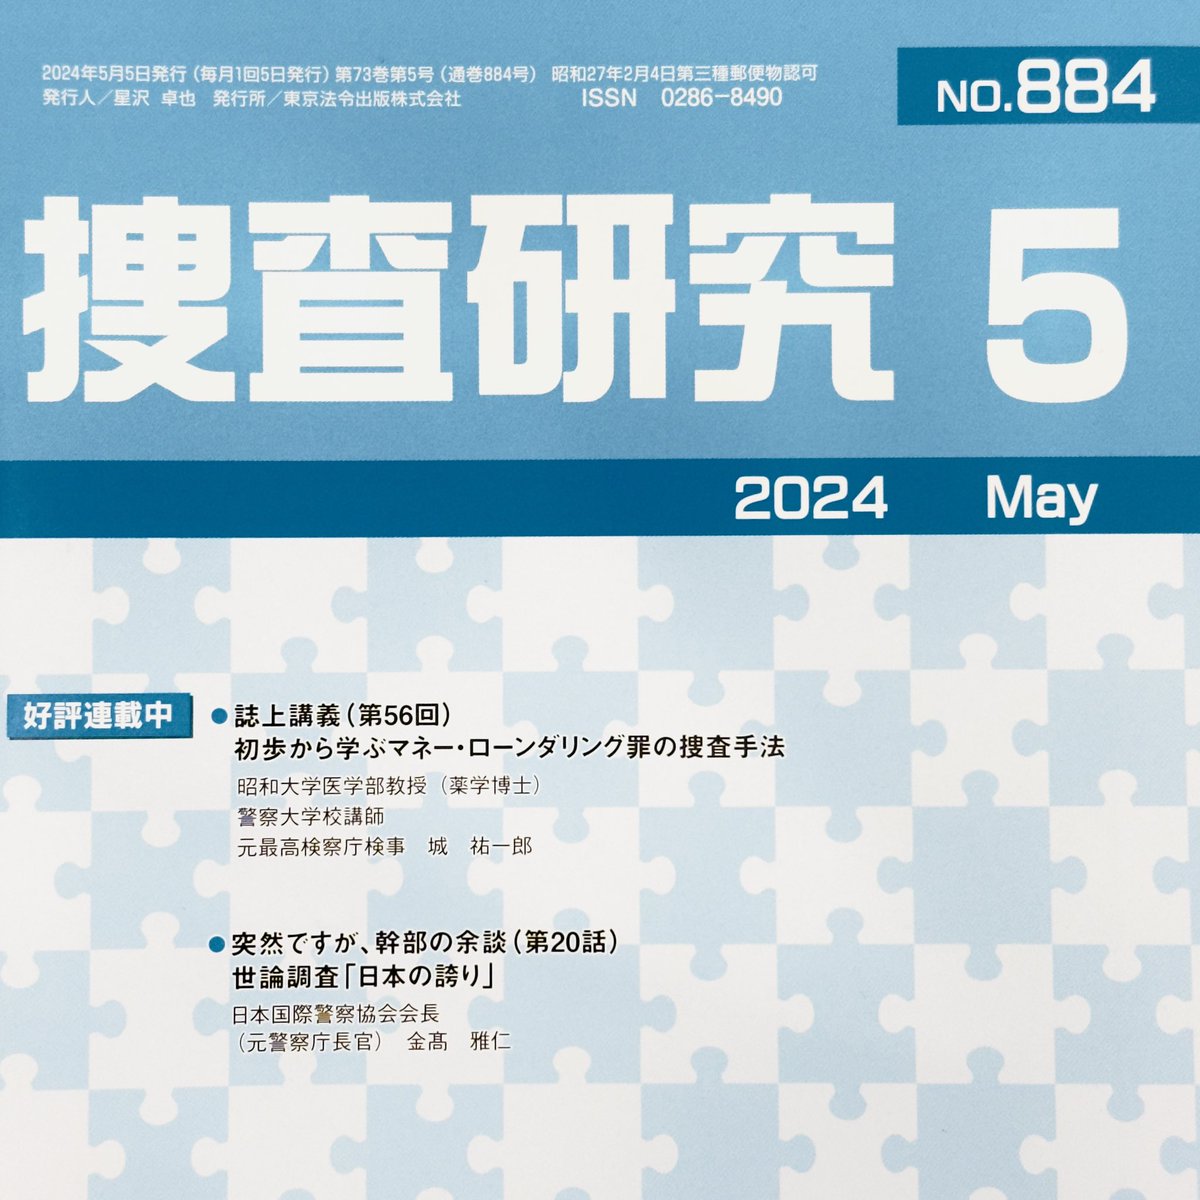 AICPO(国際ボディーガード協会)副長官でCCTT代表の小山内秀友が執筆している連載《クロース・プロテクション〜身辺警護・要人警護業務〜》の第7回記事が、東京法令出版『捜査研究』の2024年5月号(No.884)に掲載されました。今号はEnbus/Debus（車両乗降）やProtective